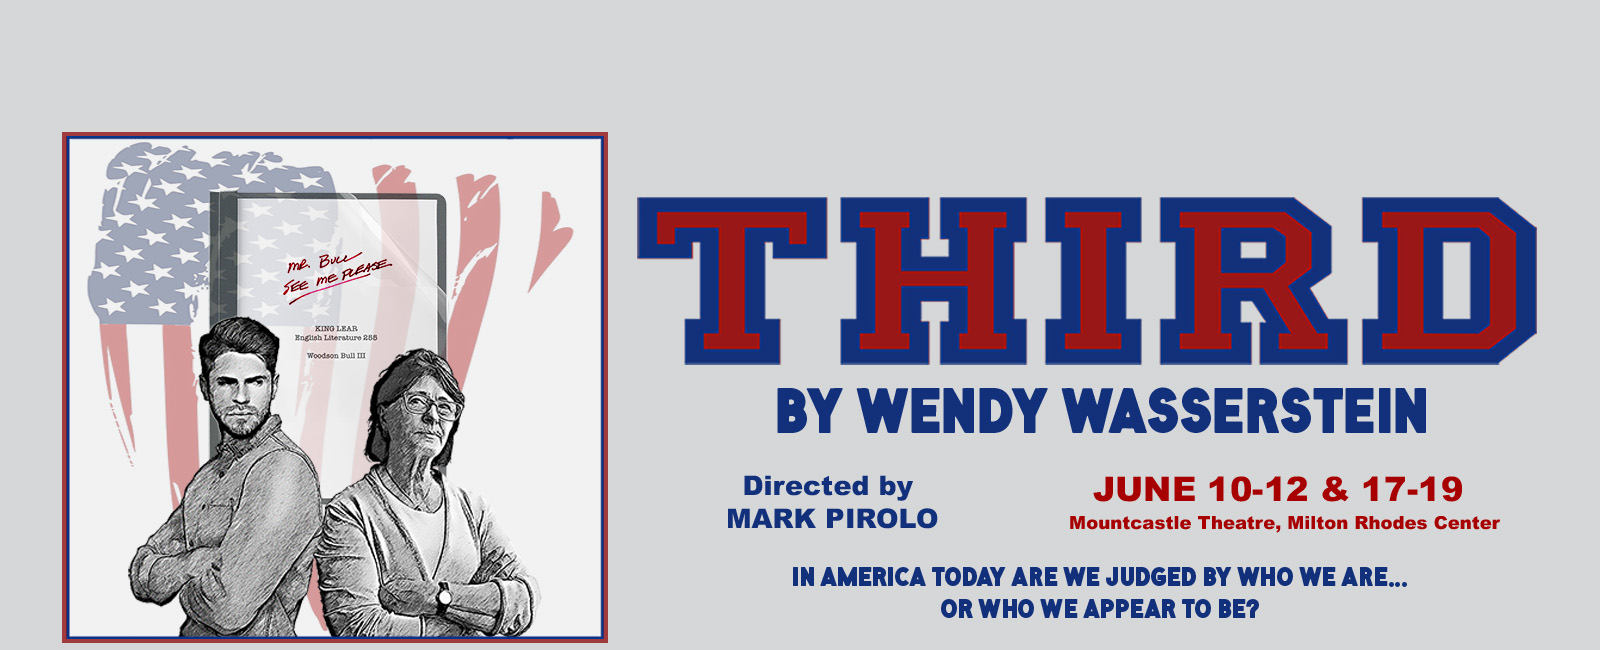 image promoting Wendy Wasserstein play, Third